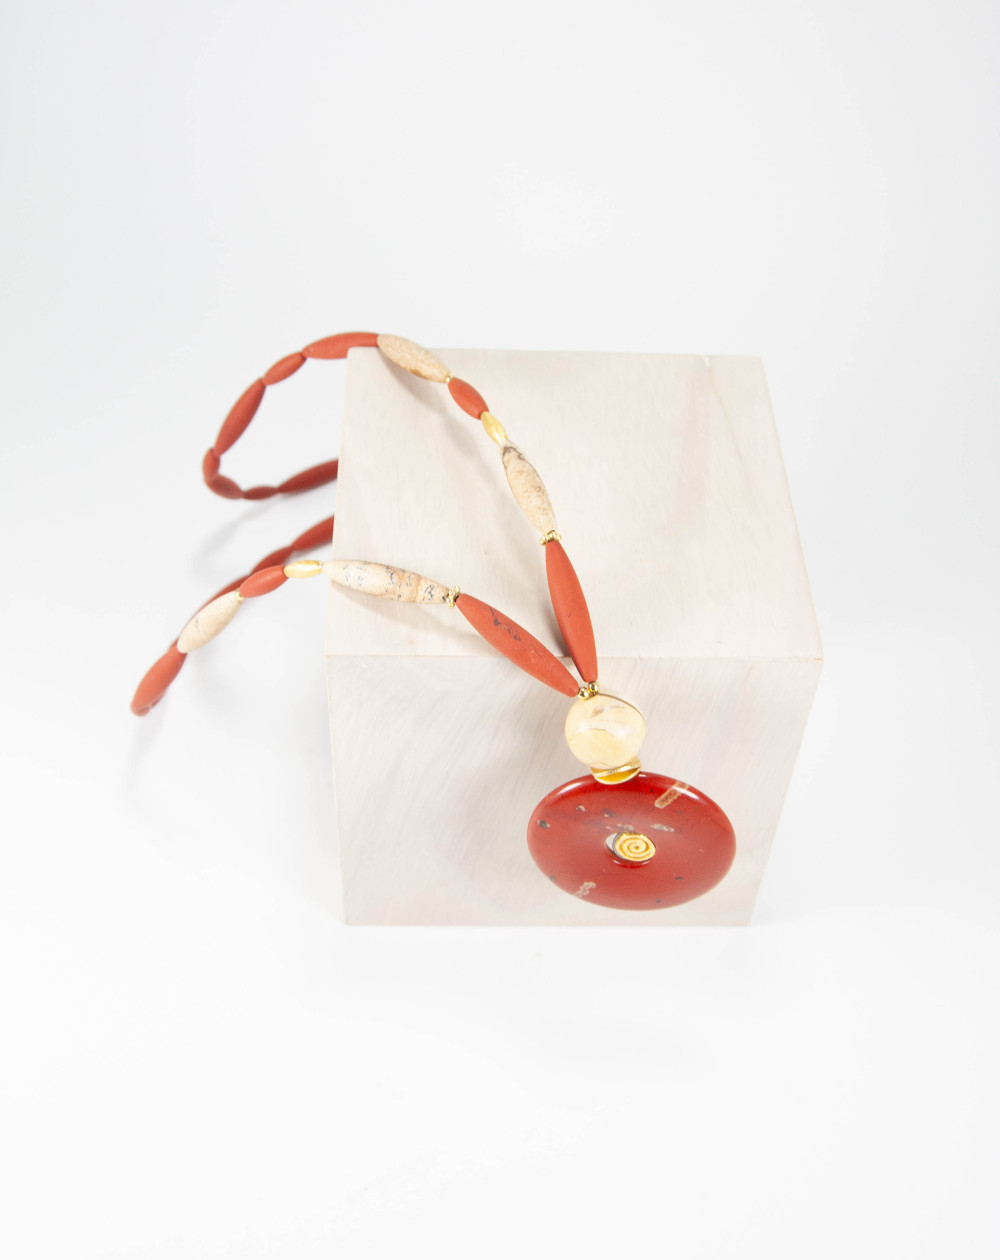 Sautoir Donut PI Jaspe Rouge et Jaspe Paysage, Sanùk Création, Artisans Créateurs de bijoux à Bayonne